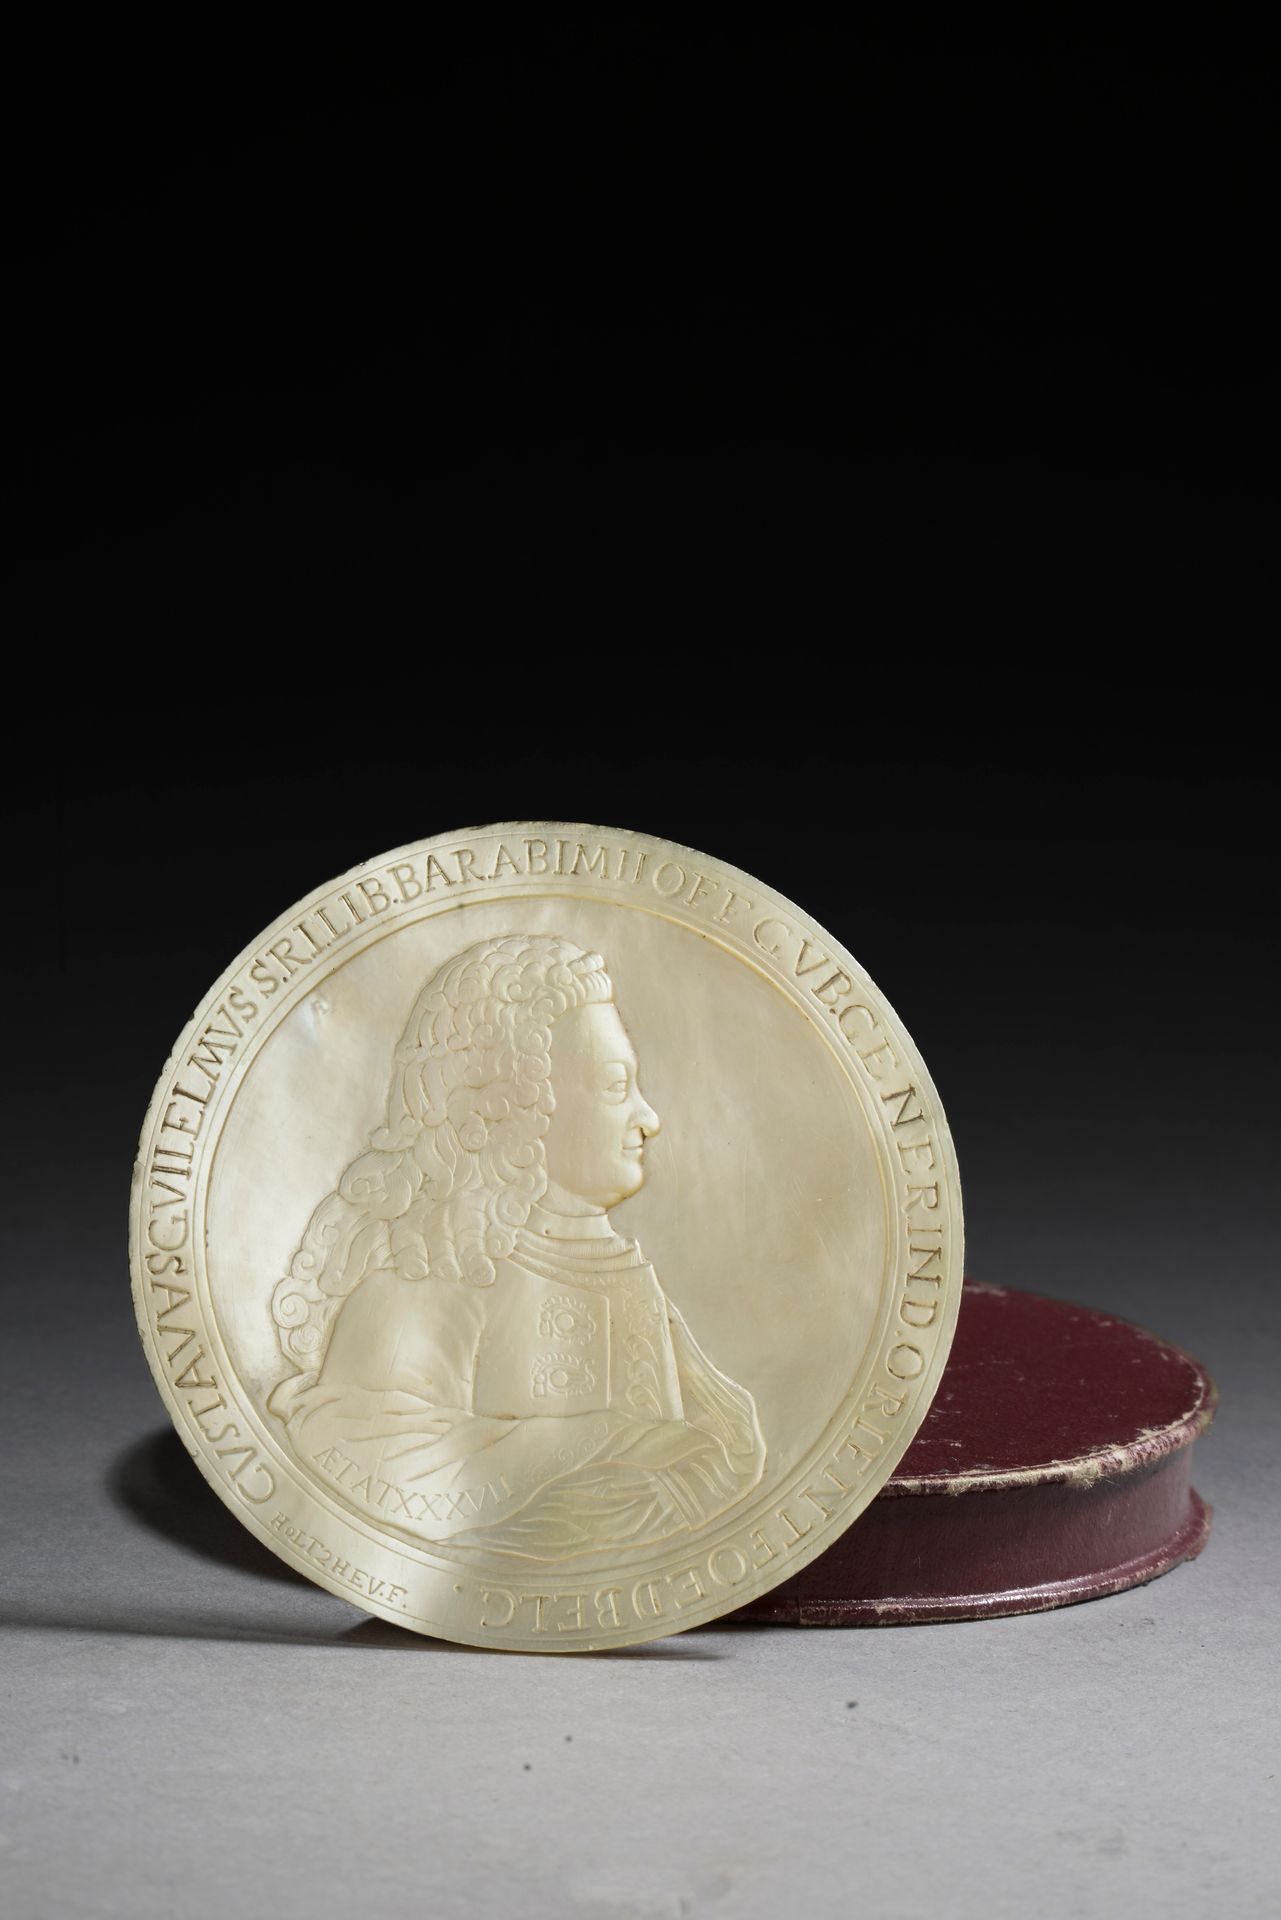 Null 以约翰-乔治-霍尔茨海（1729-1808）的名字命名。 
一个37岁的男人的侧面肖像。
雕刻的珍珠母板。
直径：7.3厘米